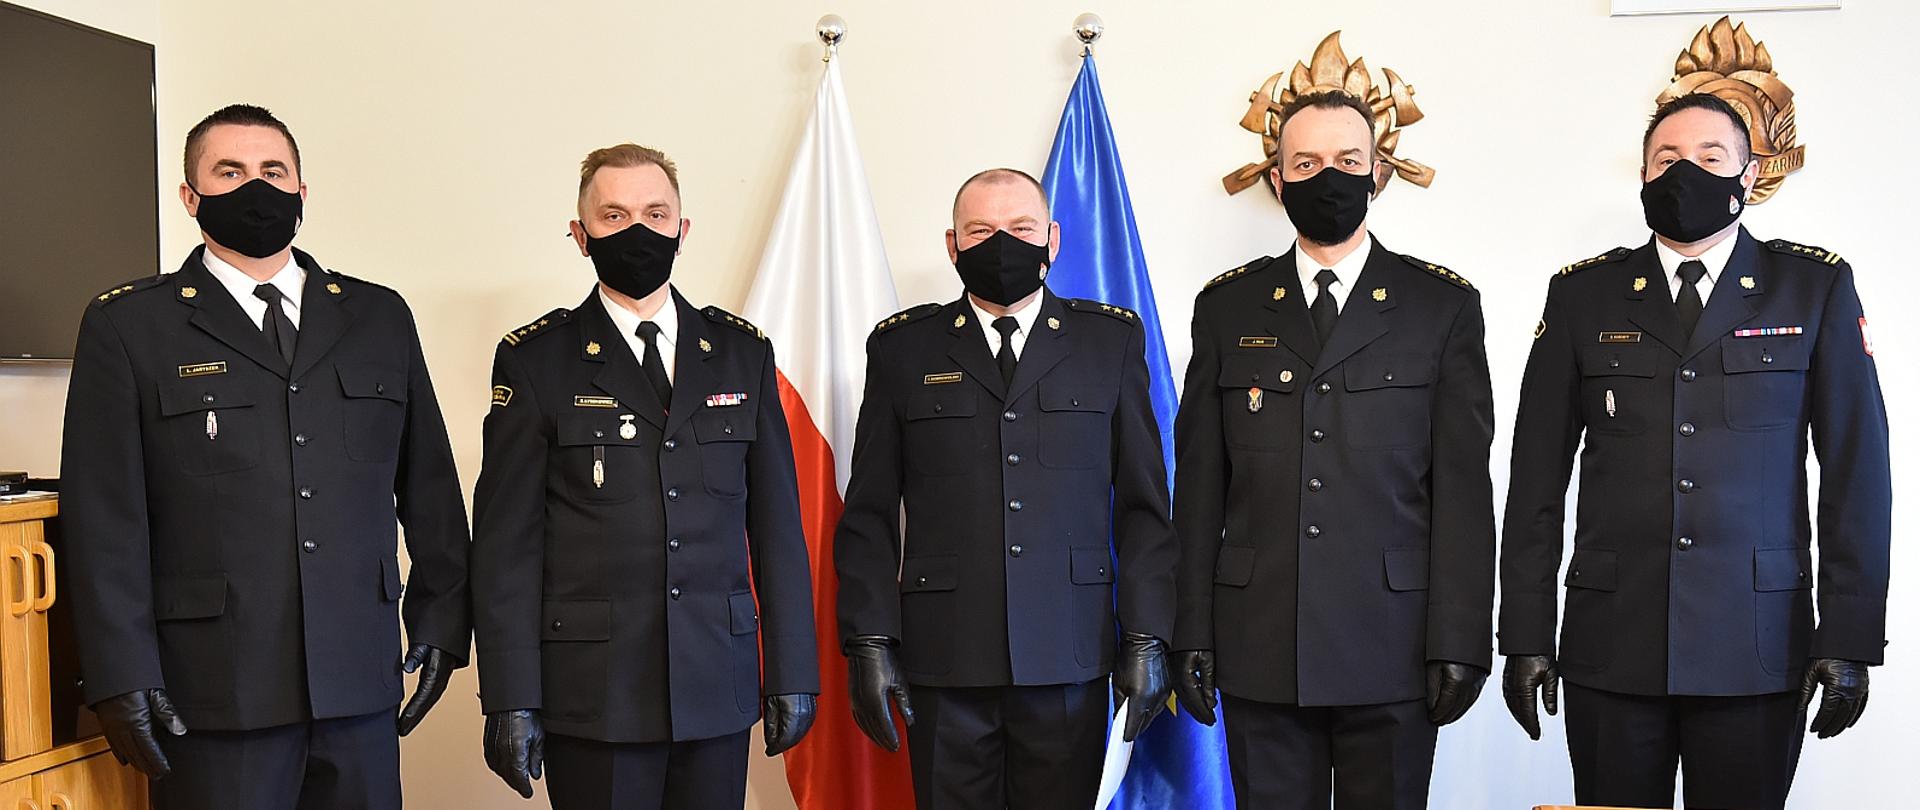 Na zdjęciu pięciu strażaków w umundurowaniu galowym stoją w rzędzie w pomieszczeniu, a nimi na ścianie flaga polski i unii europejskiej oraz dwa drzeworyty, po lewej stronie widać szafkę oraz telewizor po prawej biurko